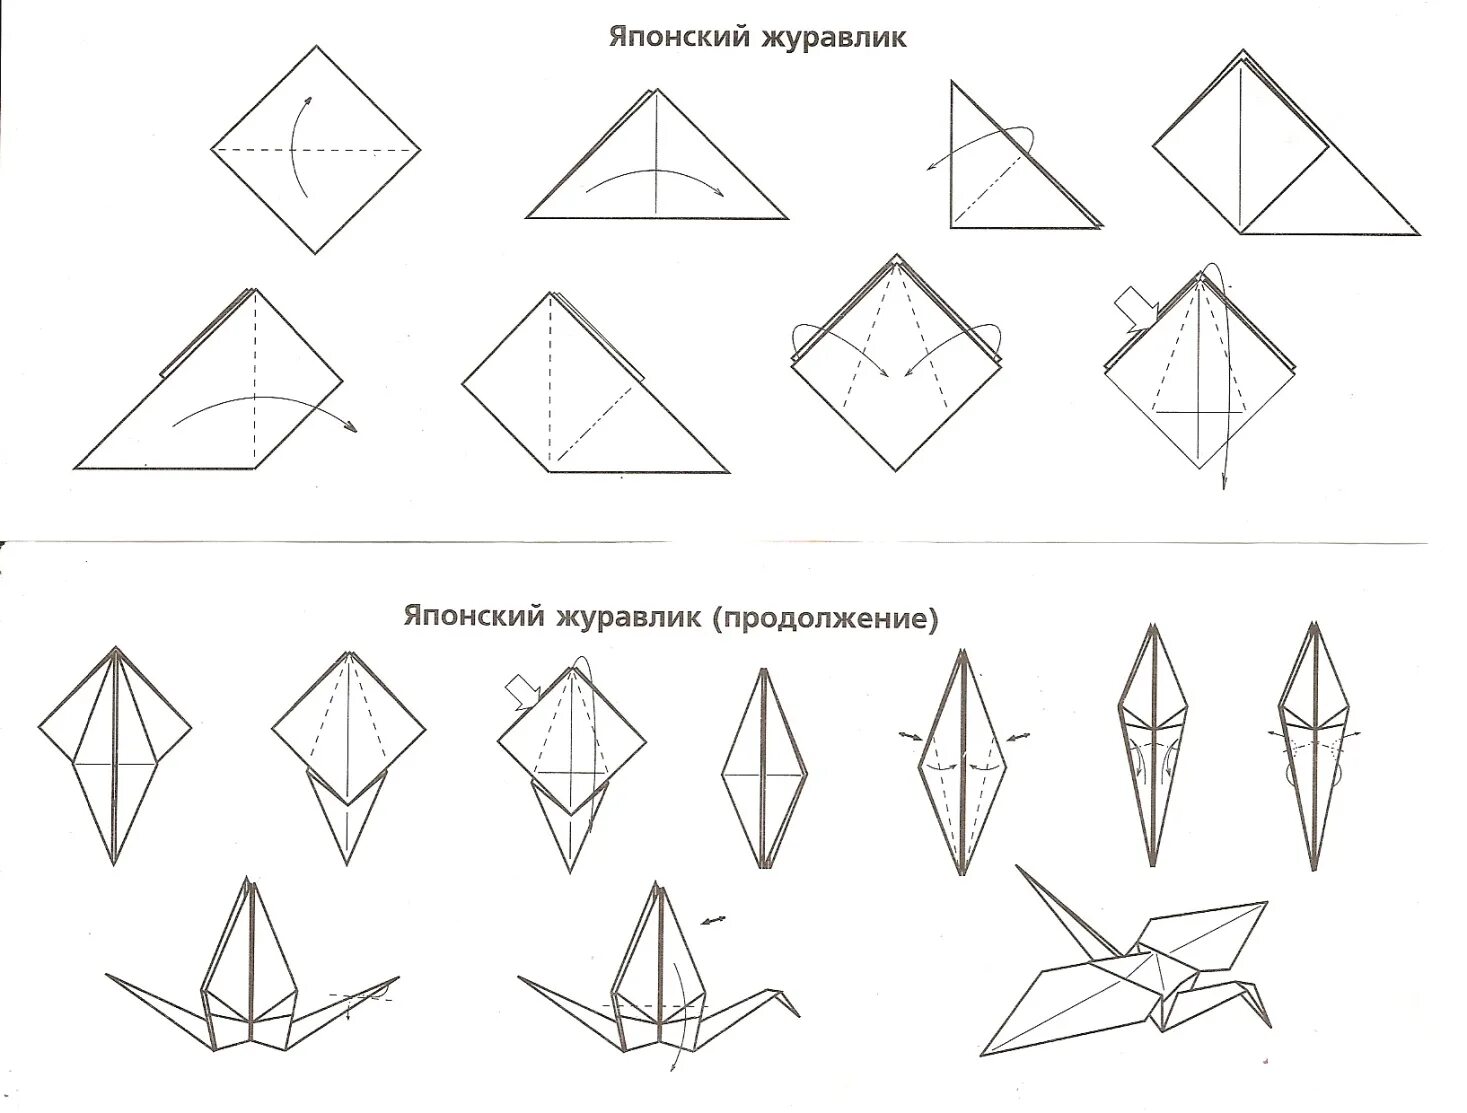 Как сложить бумажного журавлика. Оригами из бумаги для начинающих Журавлик. Оригами из бумаги Журавлик схема для начинающих. Оригами Журавлик из бумаги пошаговой инструкции. Оригами Журавлик схема для детей.